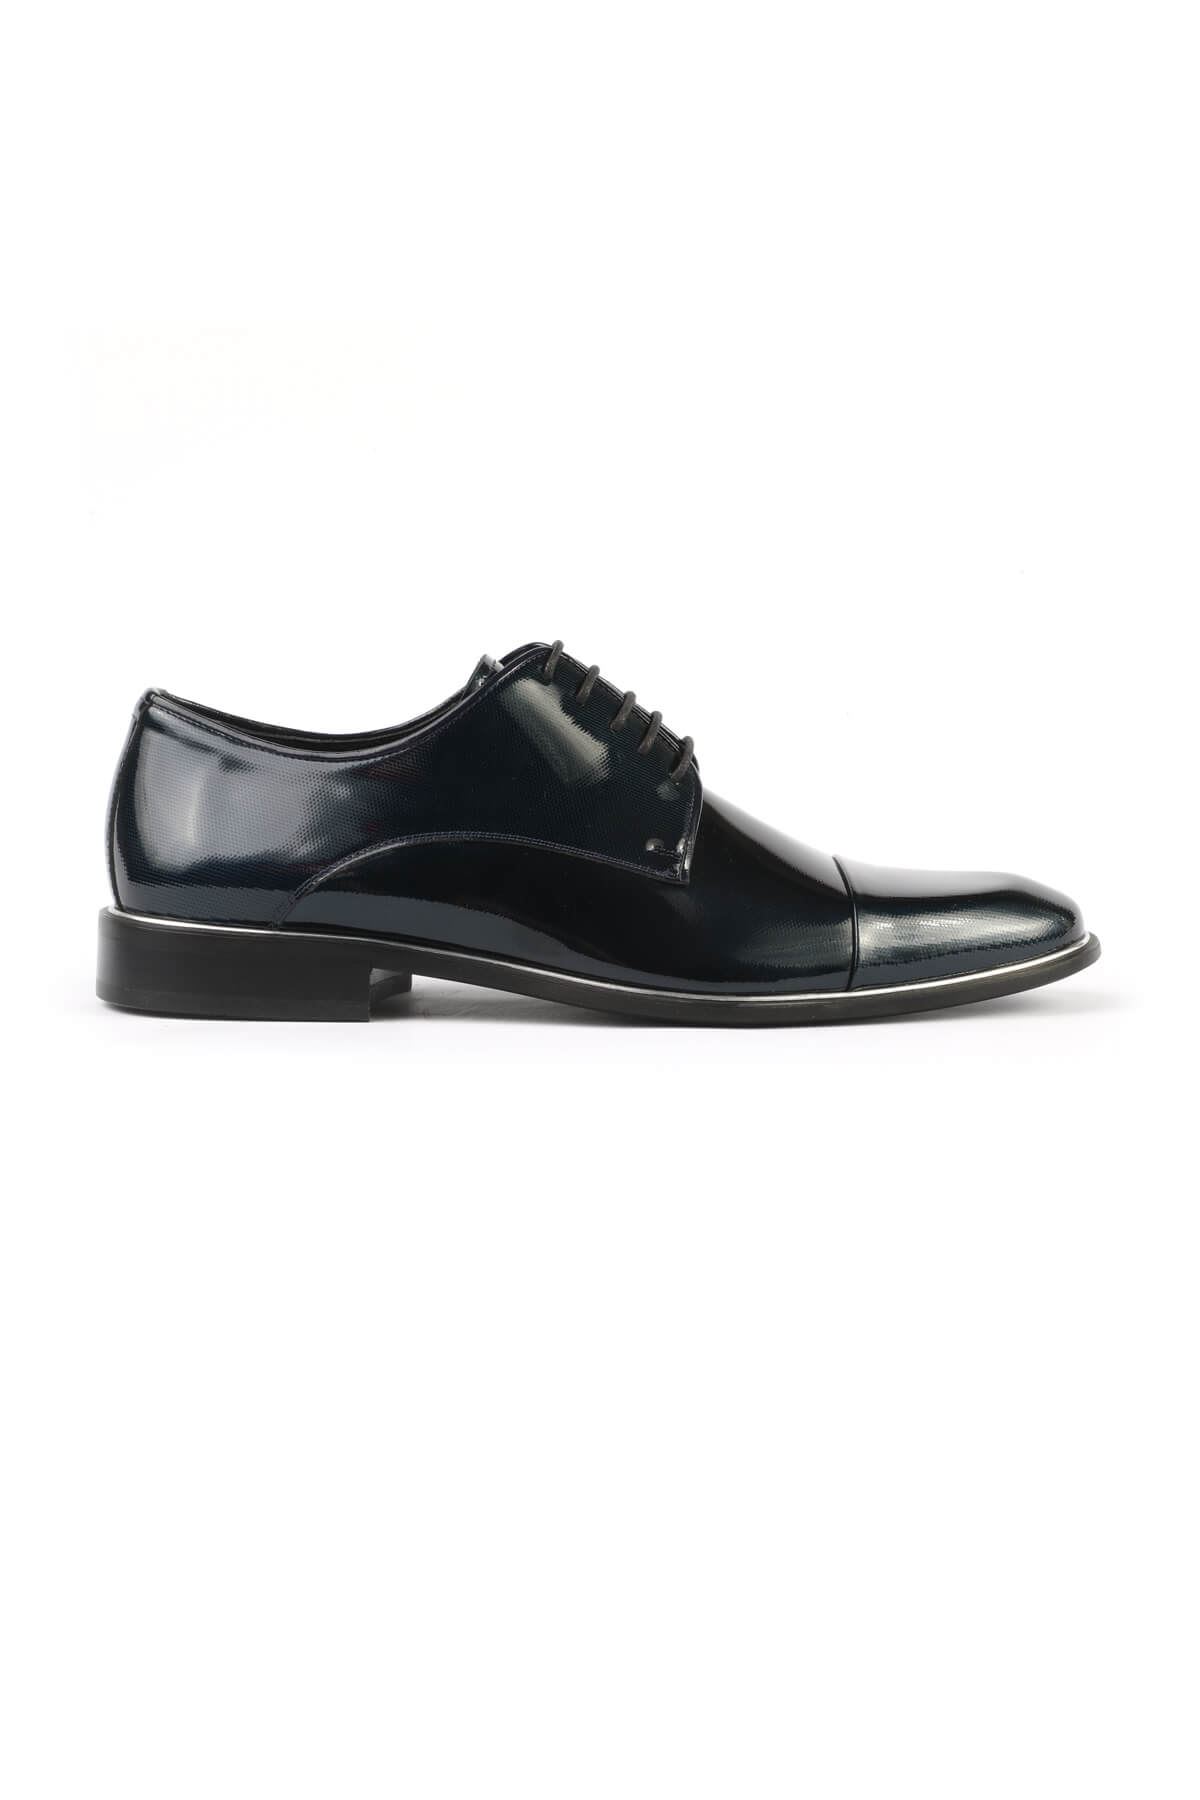 Libero 2474 Lacivert Klasik Erkek Ayakkabı